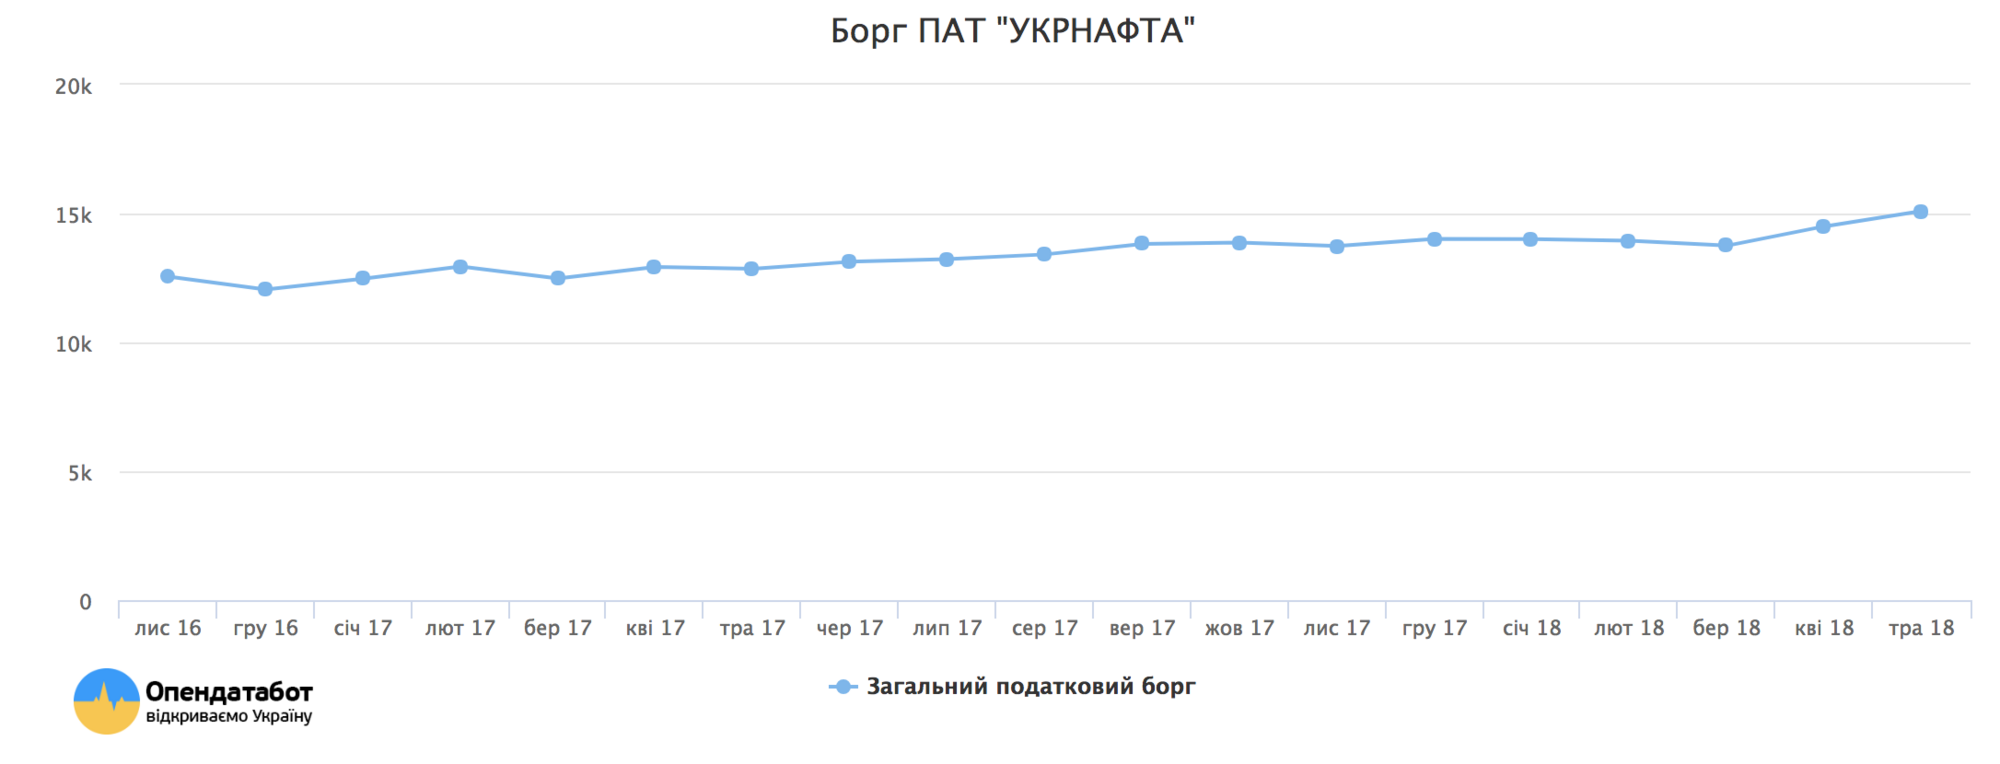 Больше транша МВФ: озвучена гигантская сумма долгов предприятий Украины